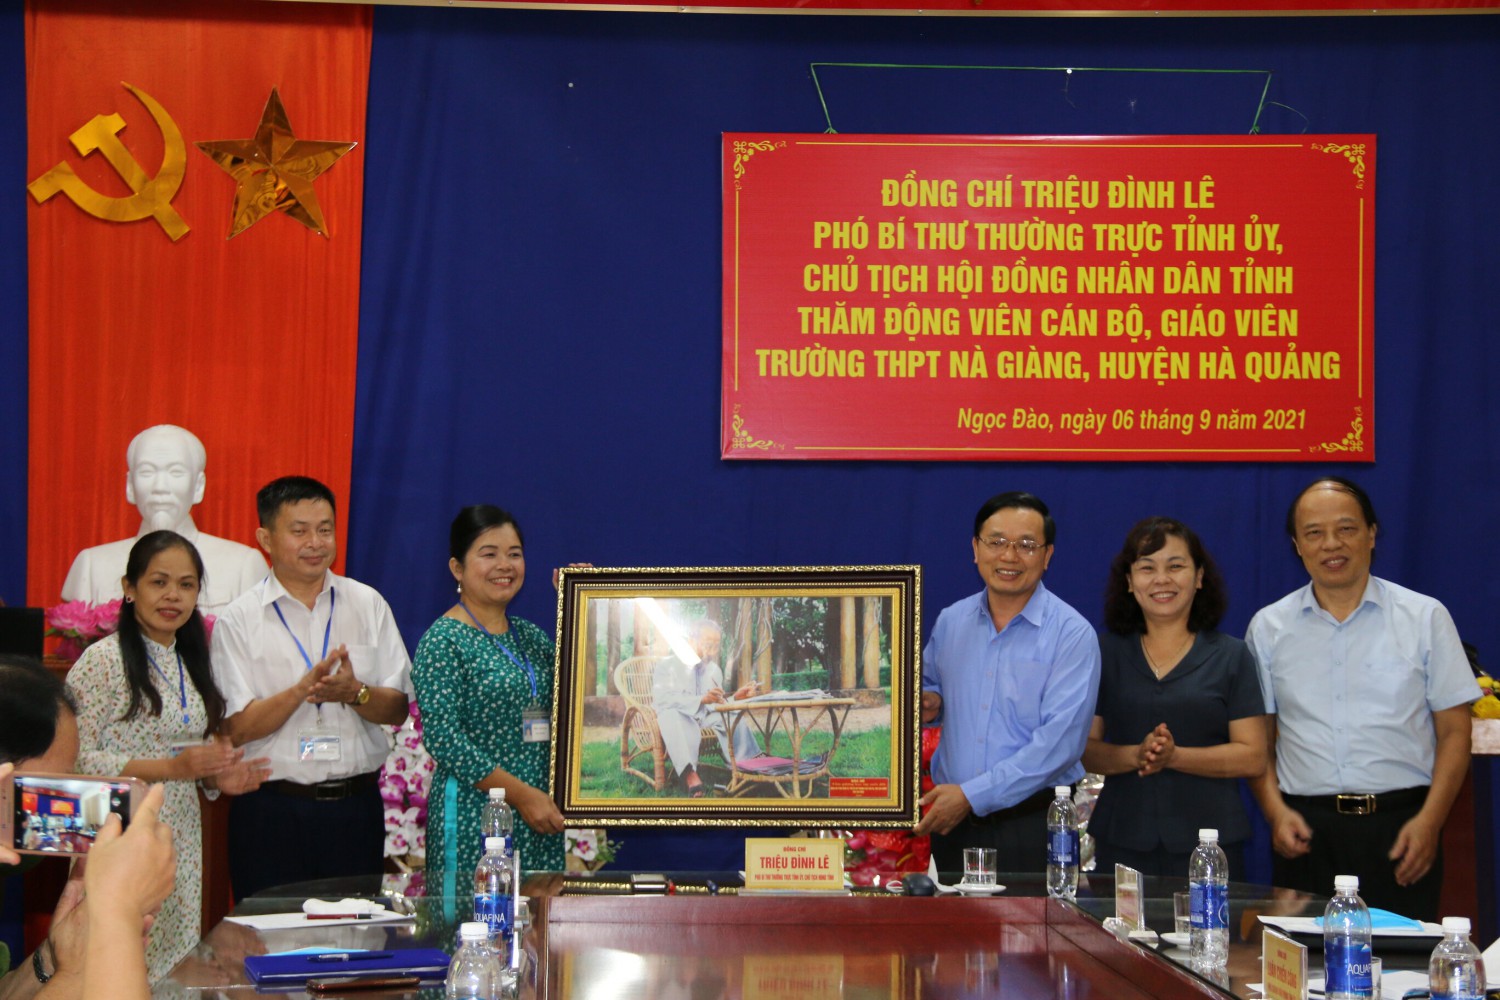 Phó bí thư Thường trực Tỉnh uỷ, Chủ tịch HĐND tỉnh Triệu Đình Lê tặng quà cán bộ, giáo viên Trường THPT Nà Giàng (Hà Quảng).